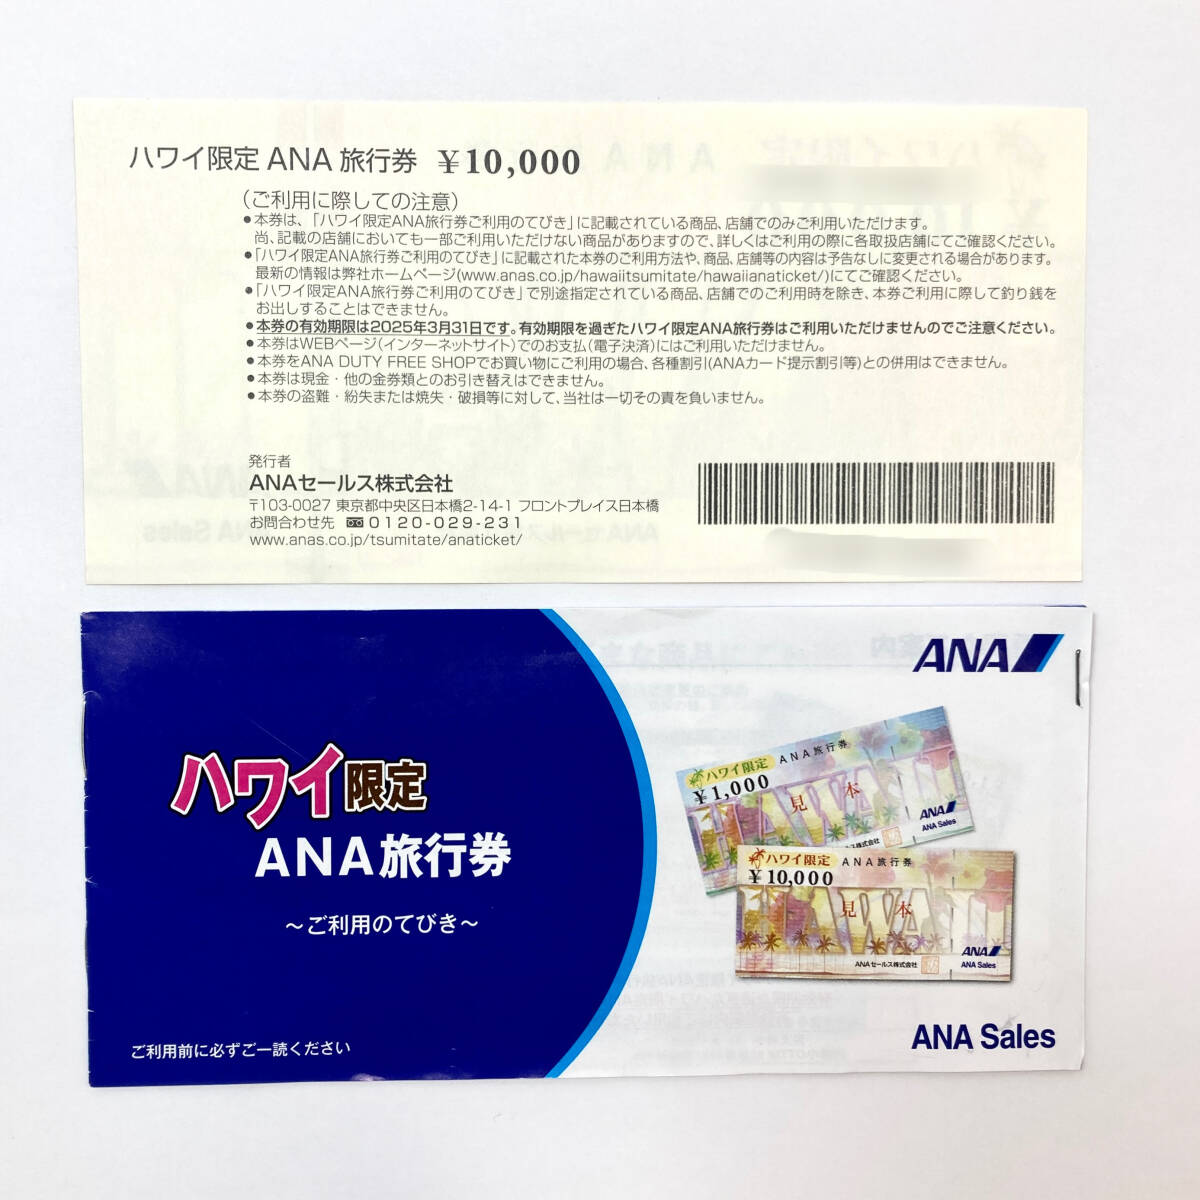 ＊【未使用】ANA 旅行券 ハワイ限定 10万円分 (10,000円×10枚) 2025年3月31日までの画像2